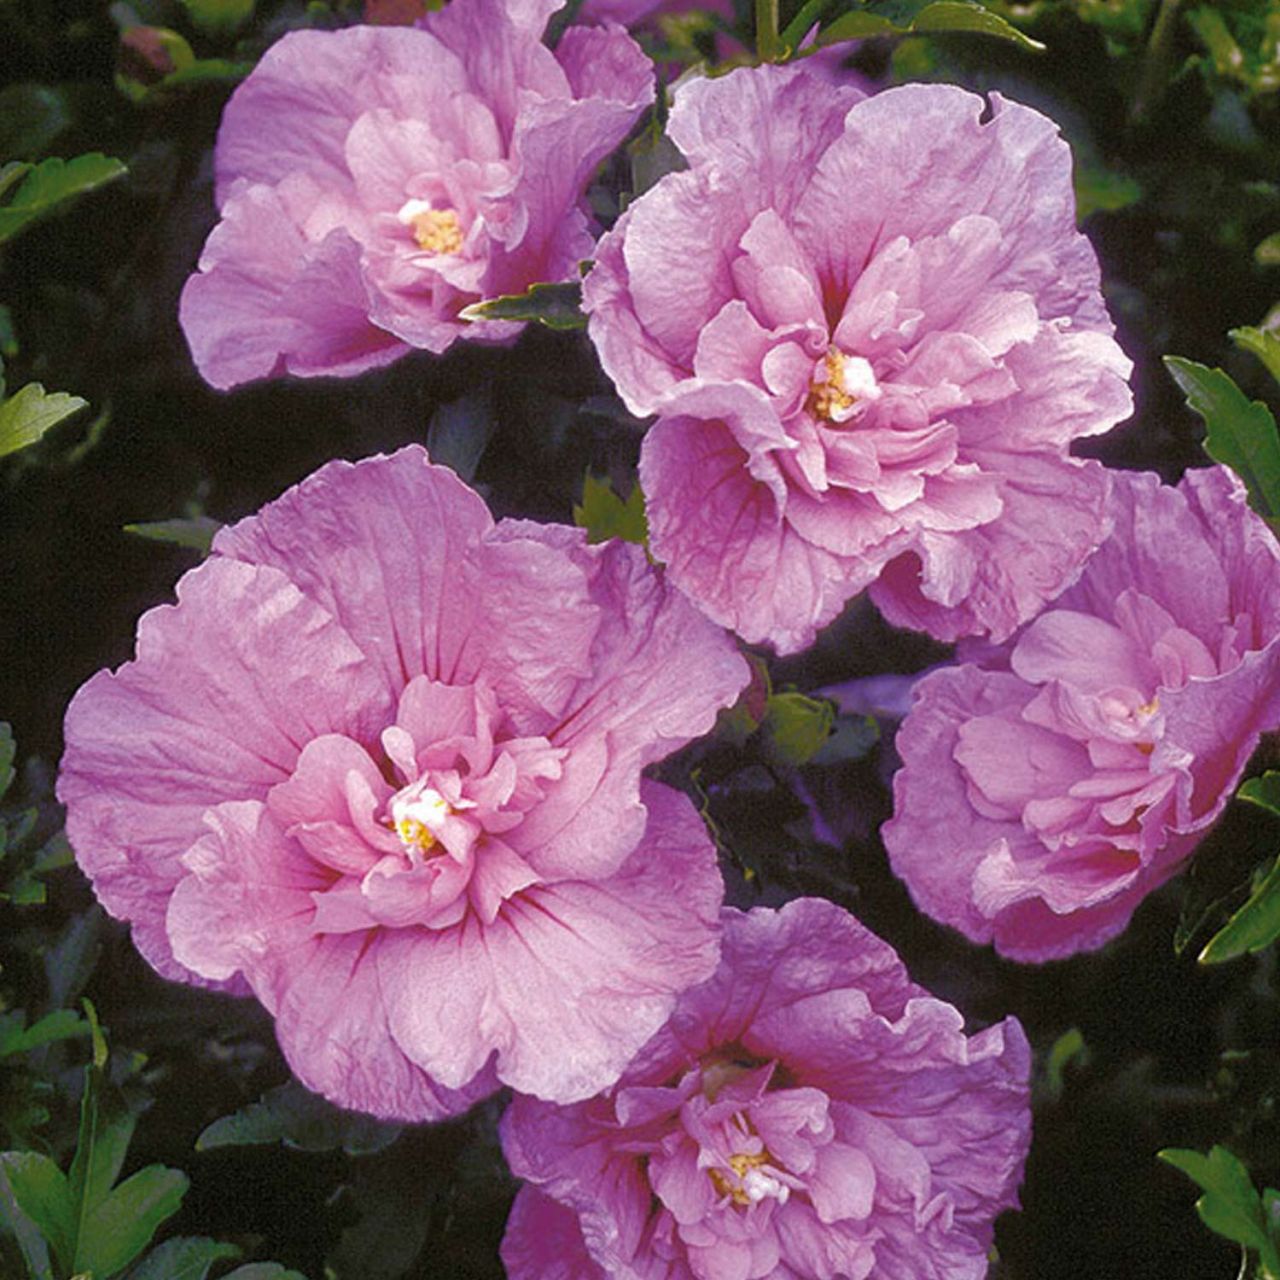 Kategorie <b>Blütensträucher und Ziergehölze </b> - Hibiscus 'Lavender Chiffon®' - Hibiscus syriacus 'Lavender Chiffon®'